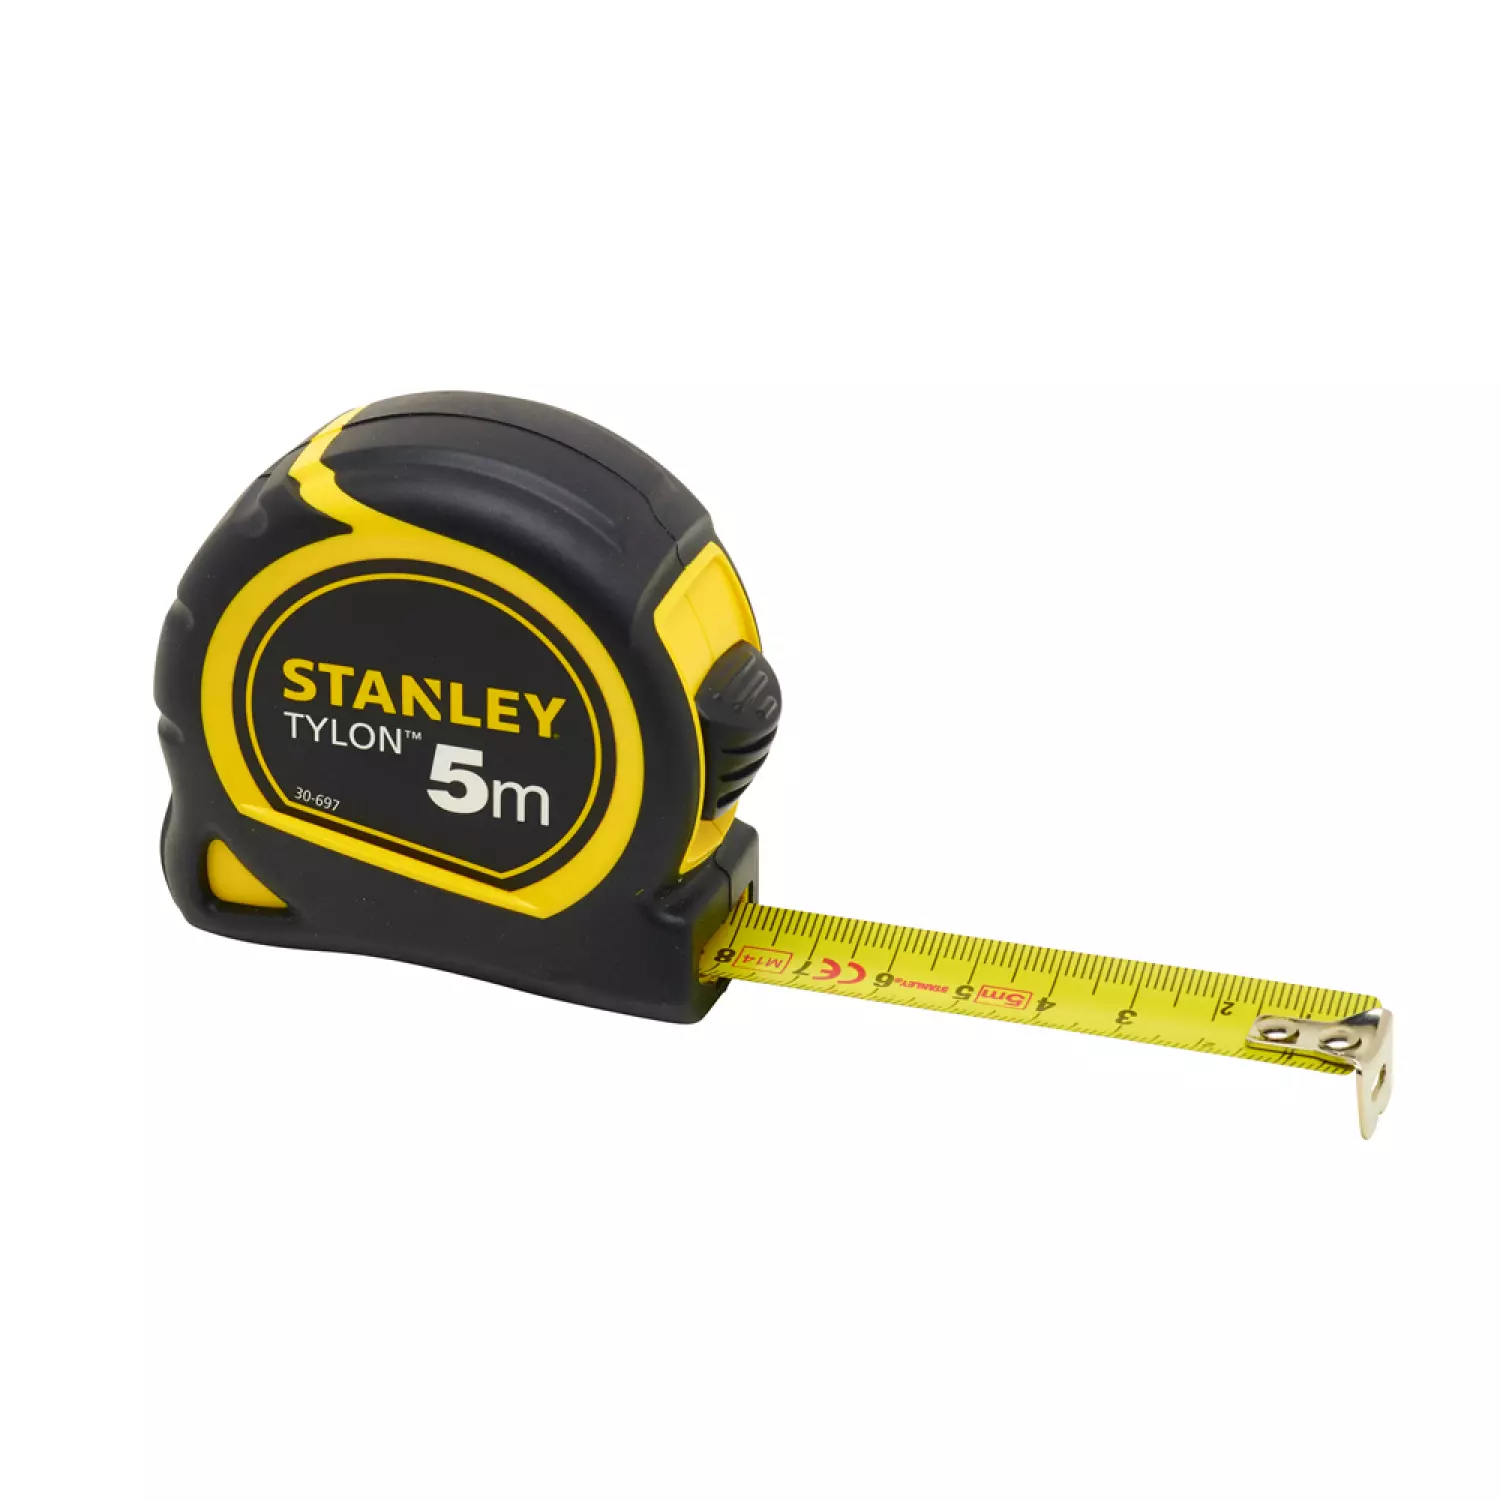 Stanley 0-30-697 - Mètre Ruban Stanley Tylon 5m -19mm-image